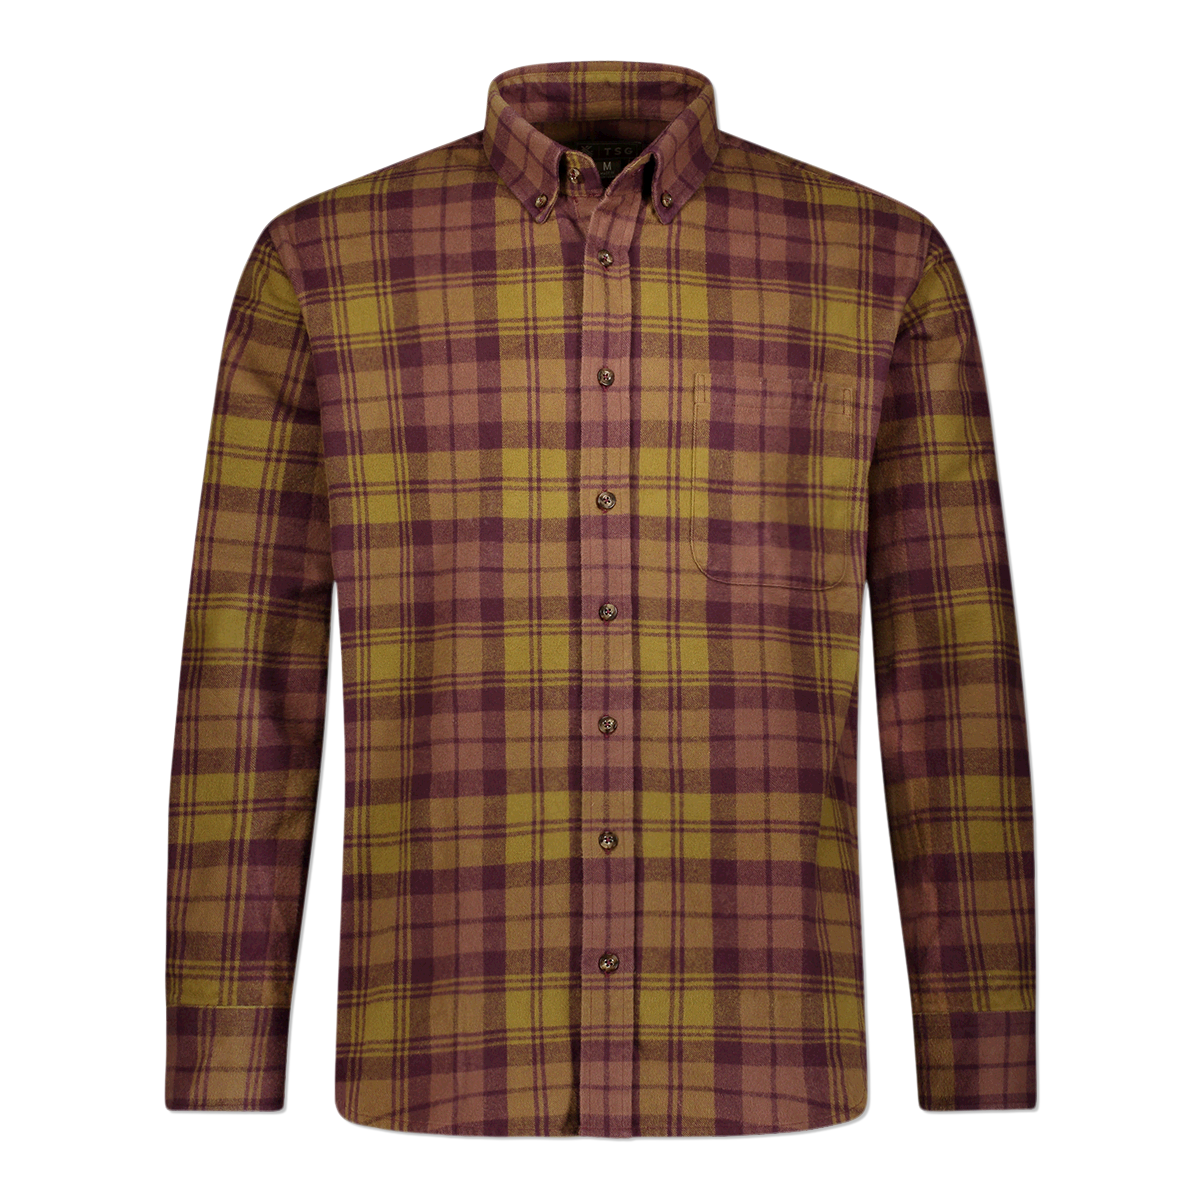 TSG Heavyweight Flannel Shirt (Olive)